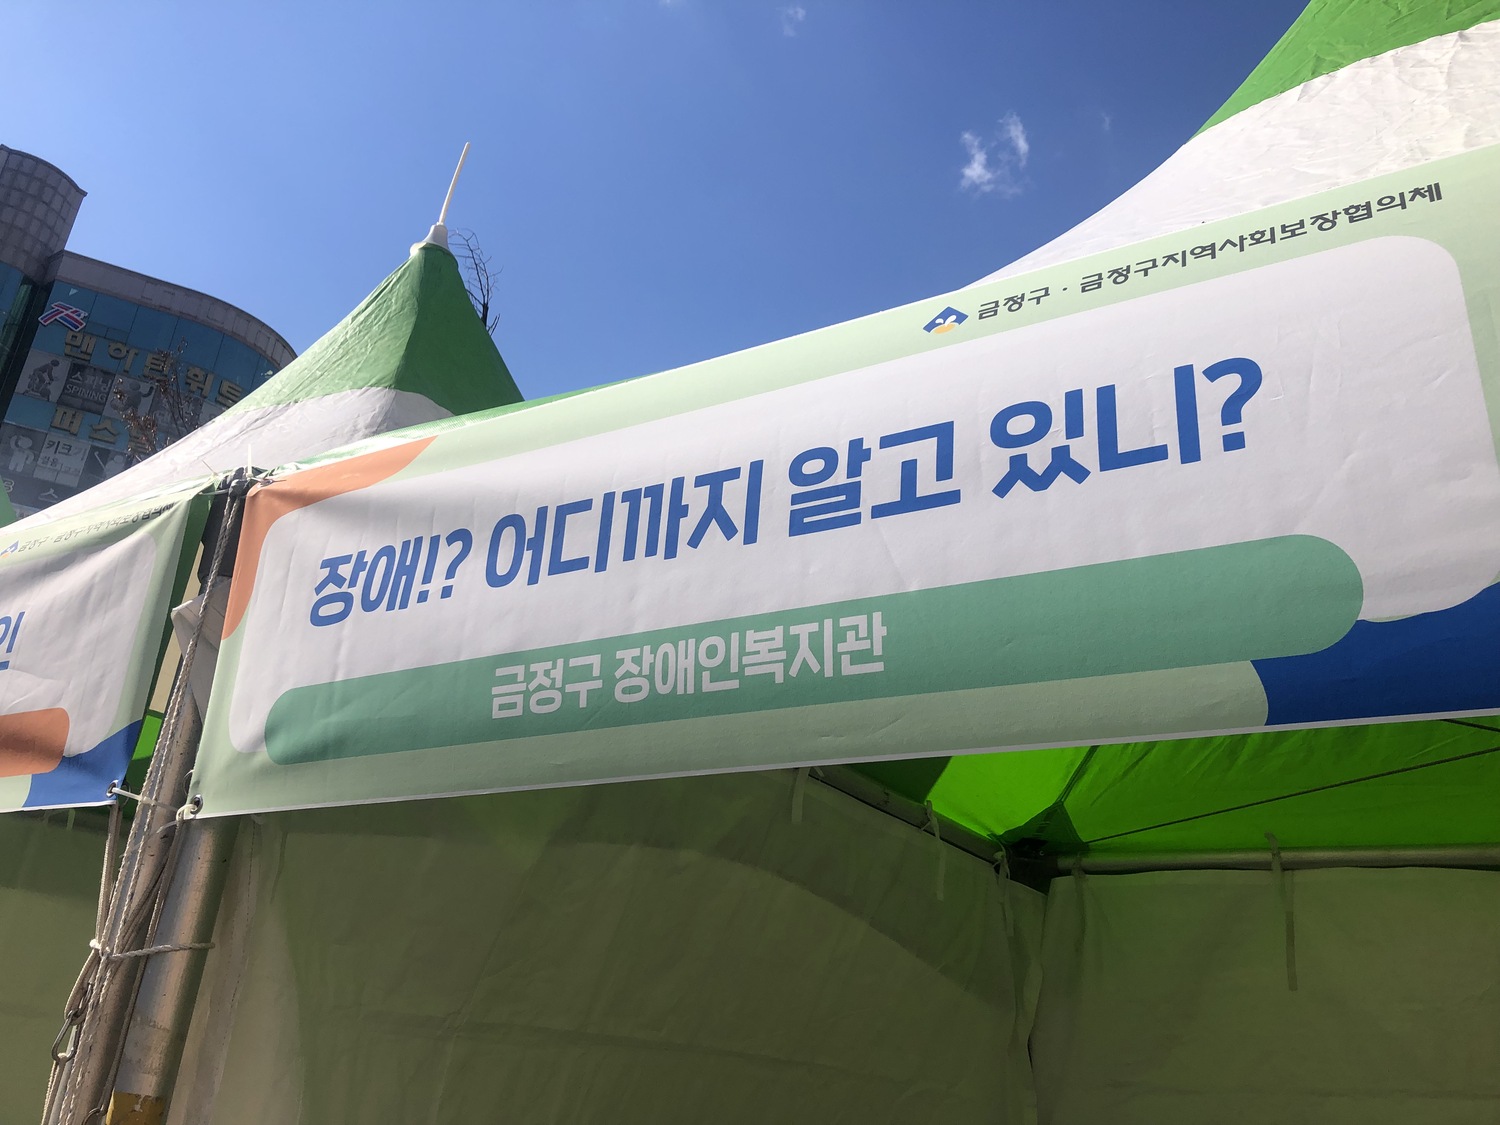 2021금정복지박람회 참여(유, 장애인식개선OX 